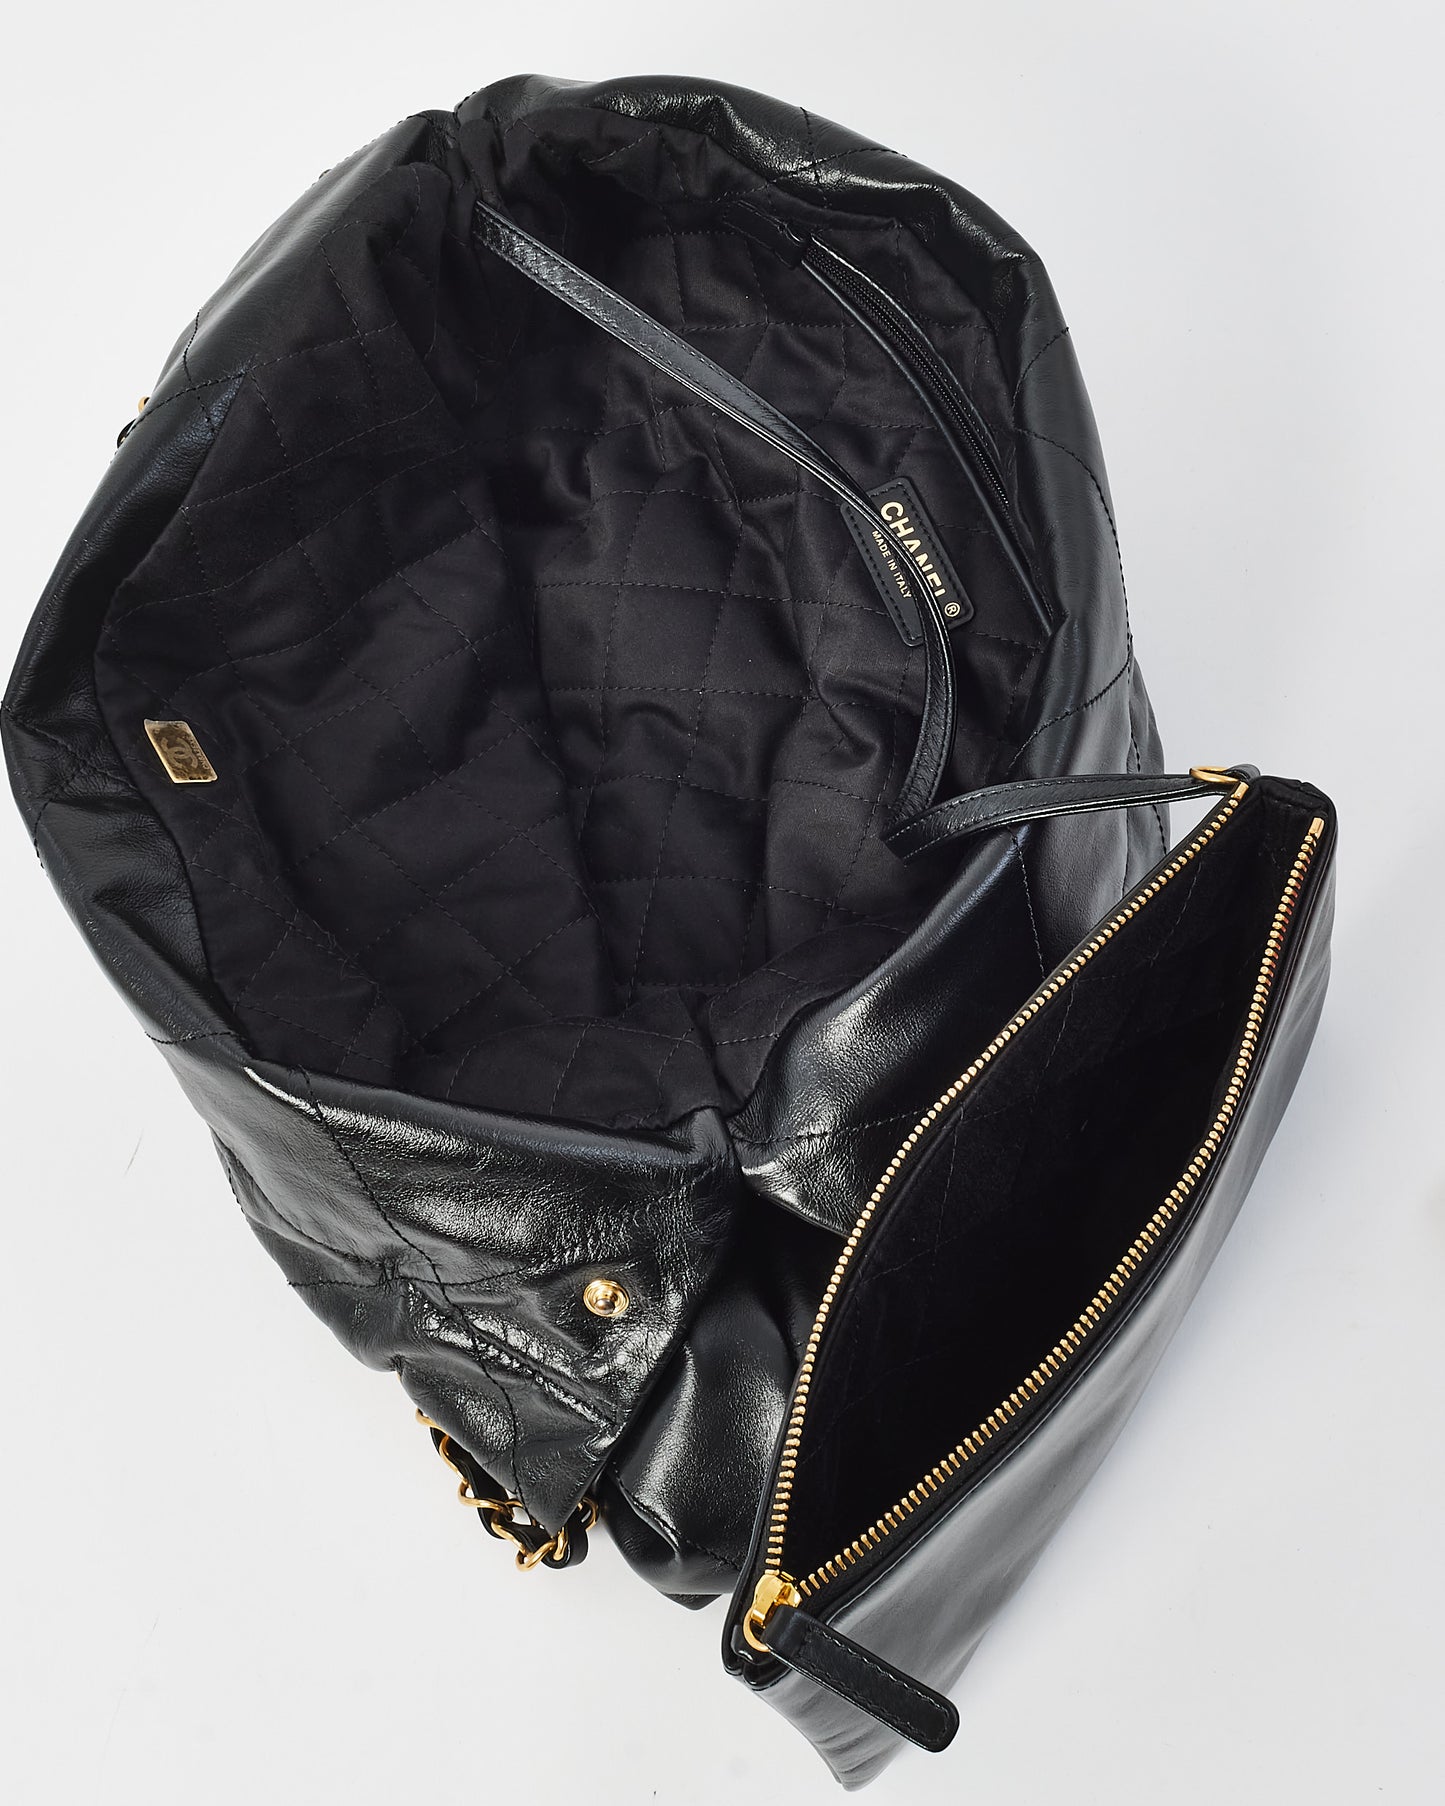 Chanel Black Lambskin Leather Chanel 22 Shoulder Bag